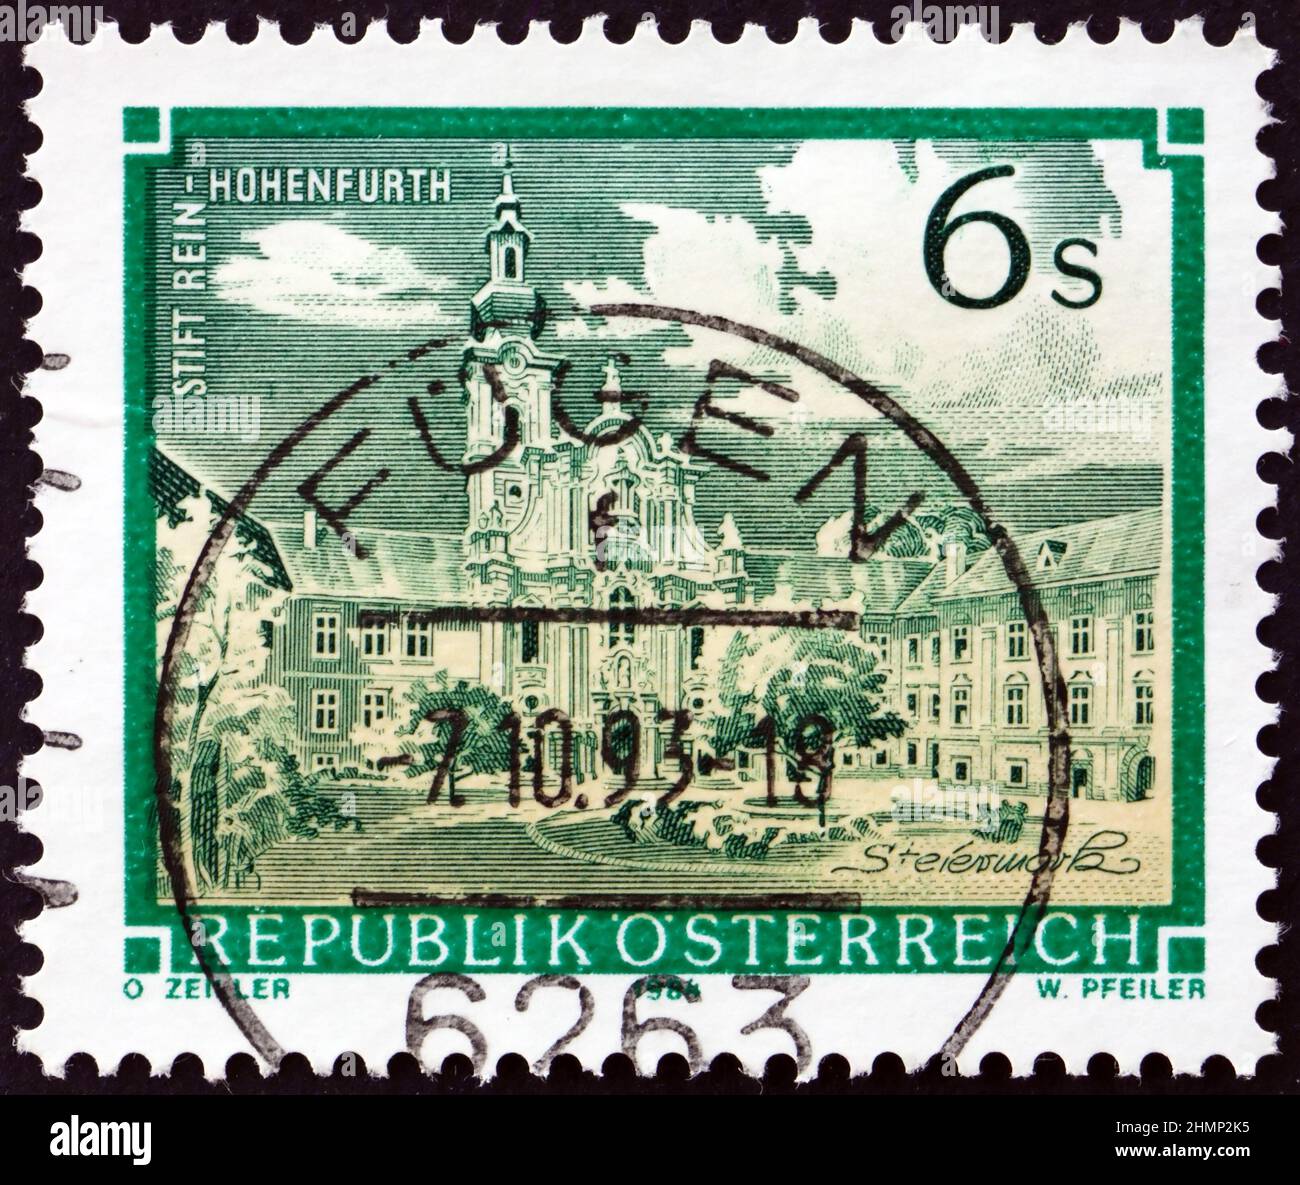 AUTRICHE - VERS 1984: Un timbre imprimé en Autriche montre l'abbaye de rein-Hohenfurth, vers 1984 Banque D'Images